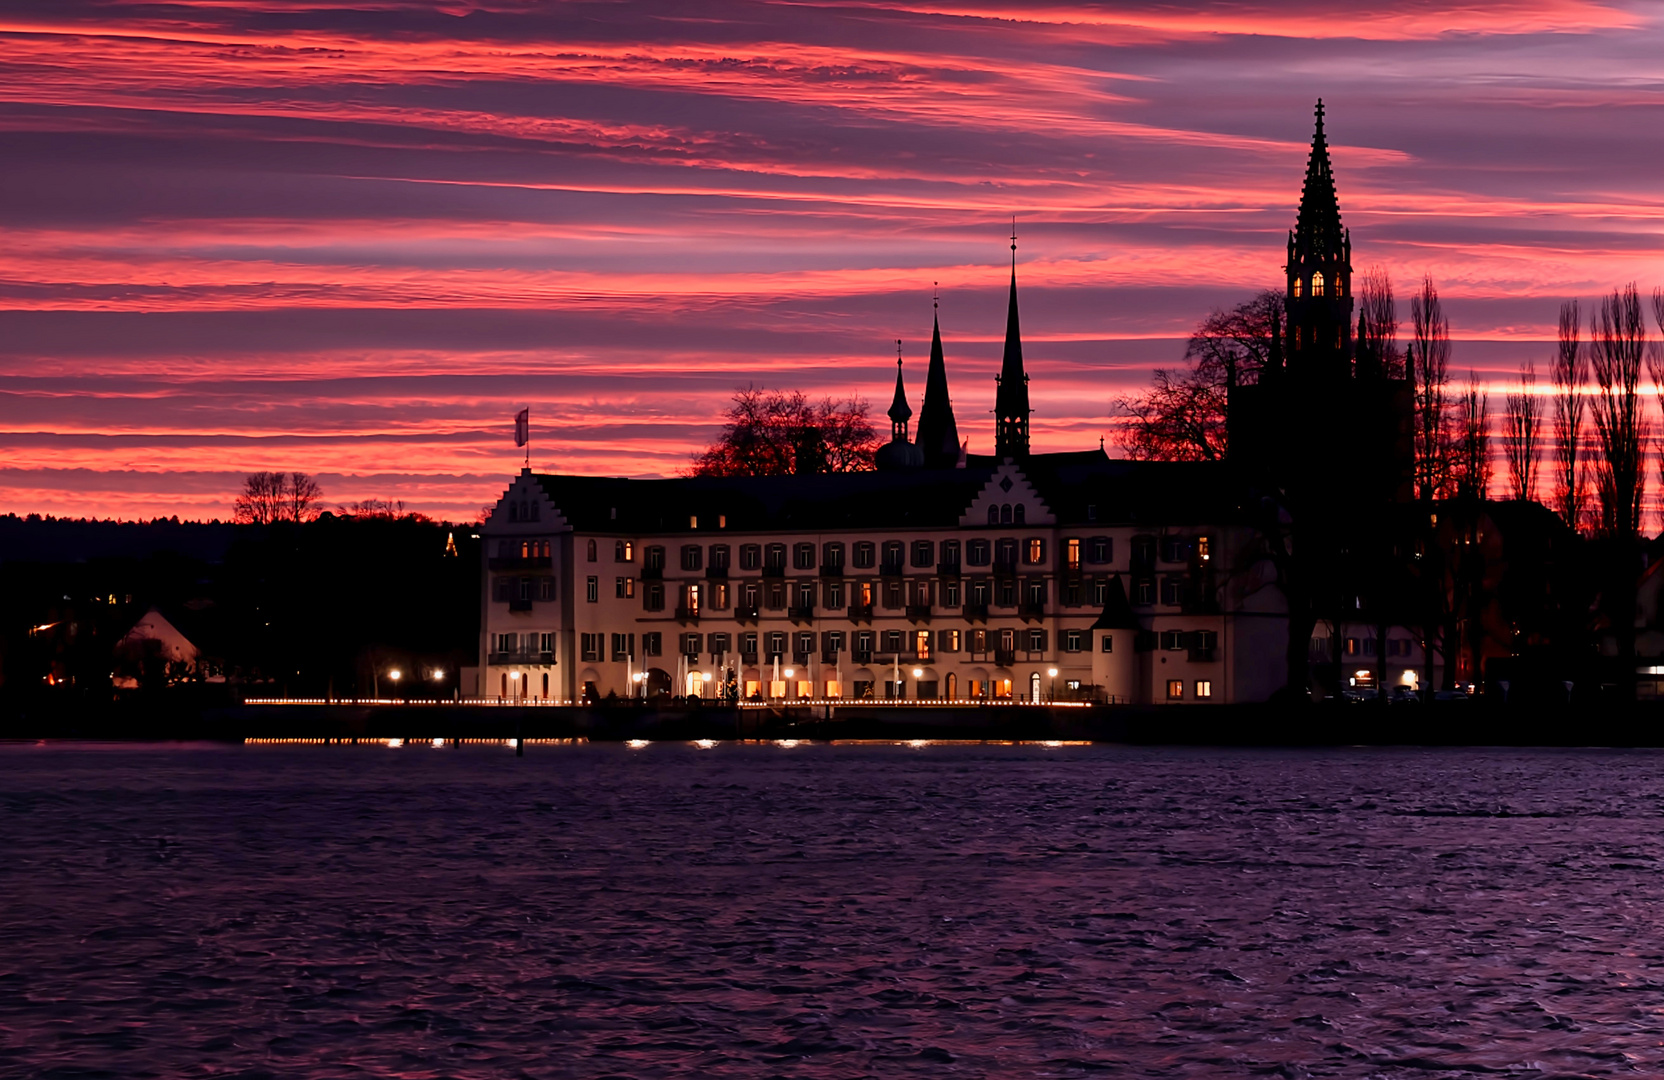 Steigenberger Inselhotel Konstanz am Abend mit schönen roten Himmel